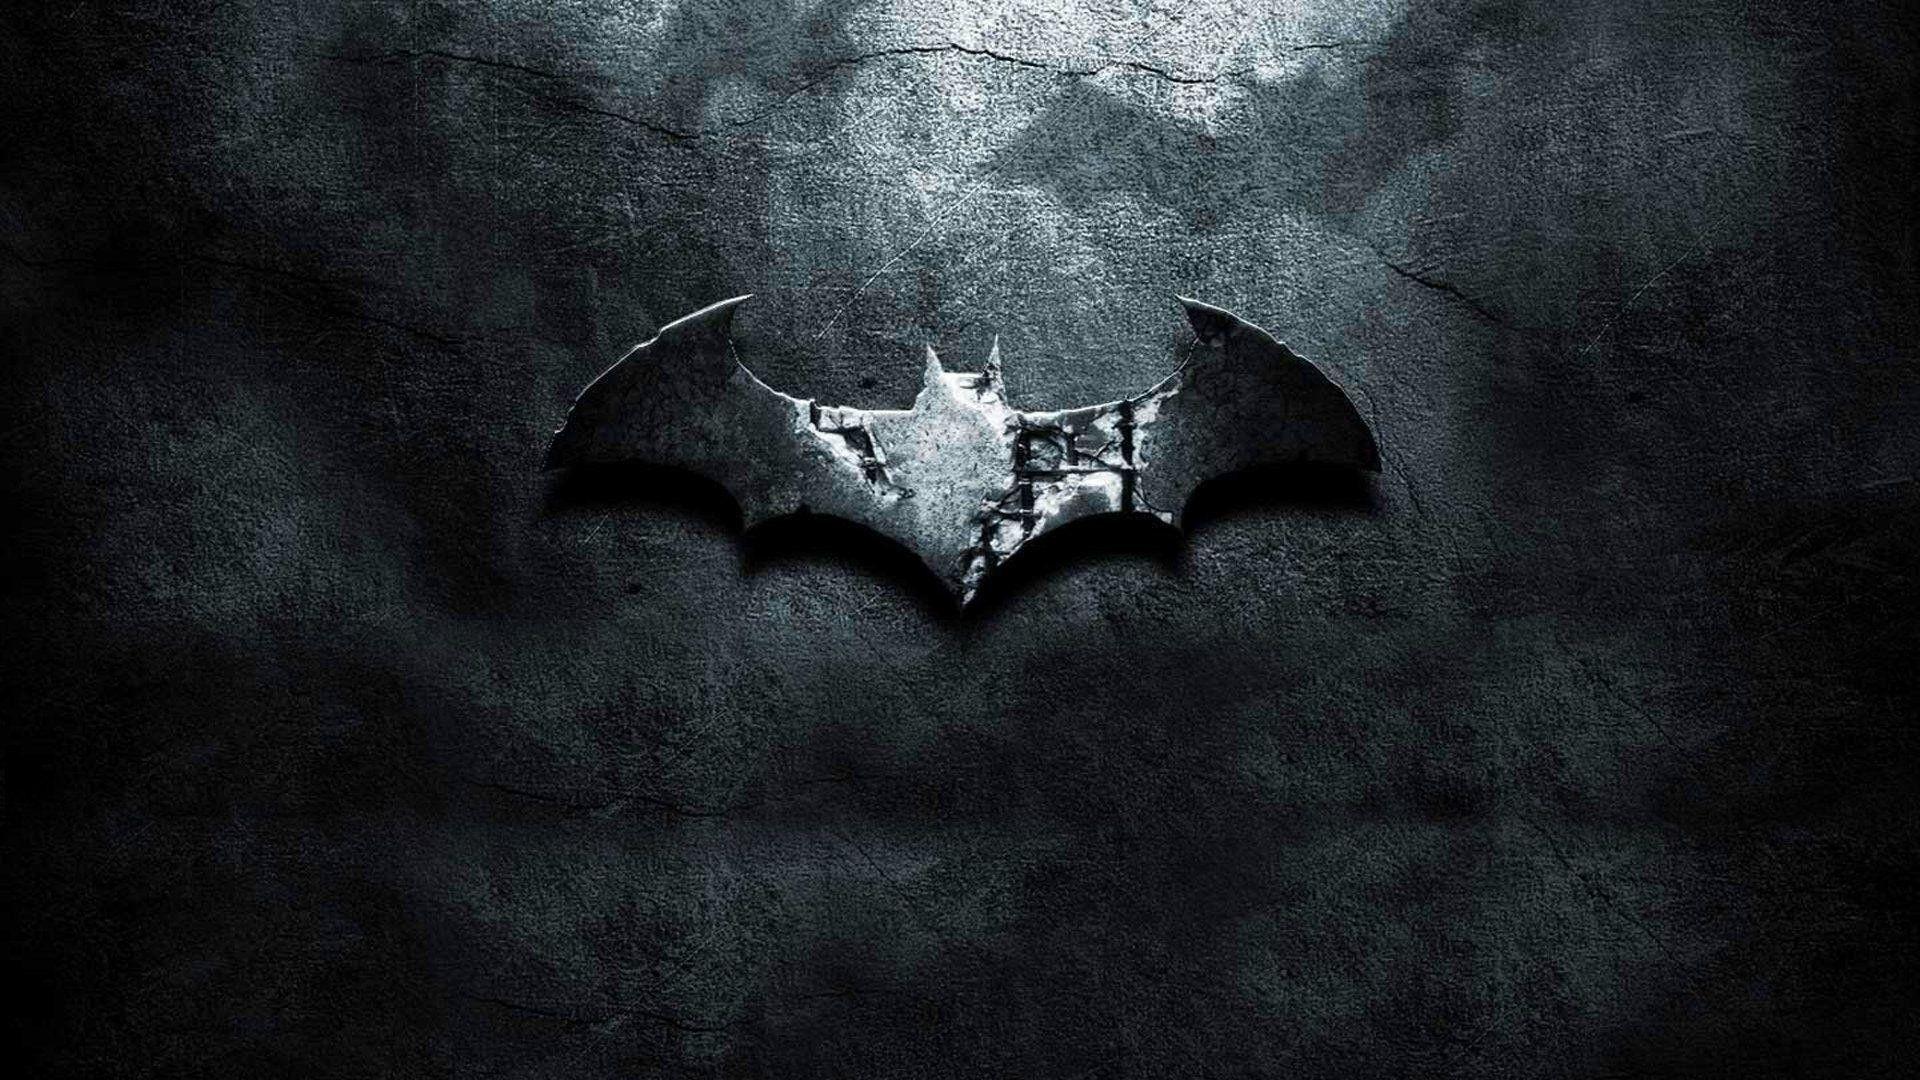 Awesome Batman Symbol Wallpaper